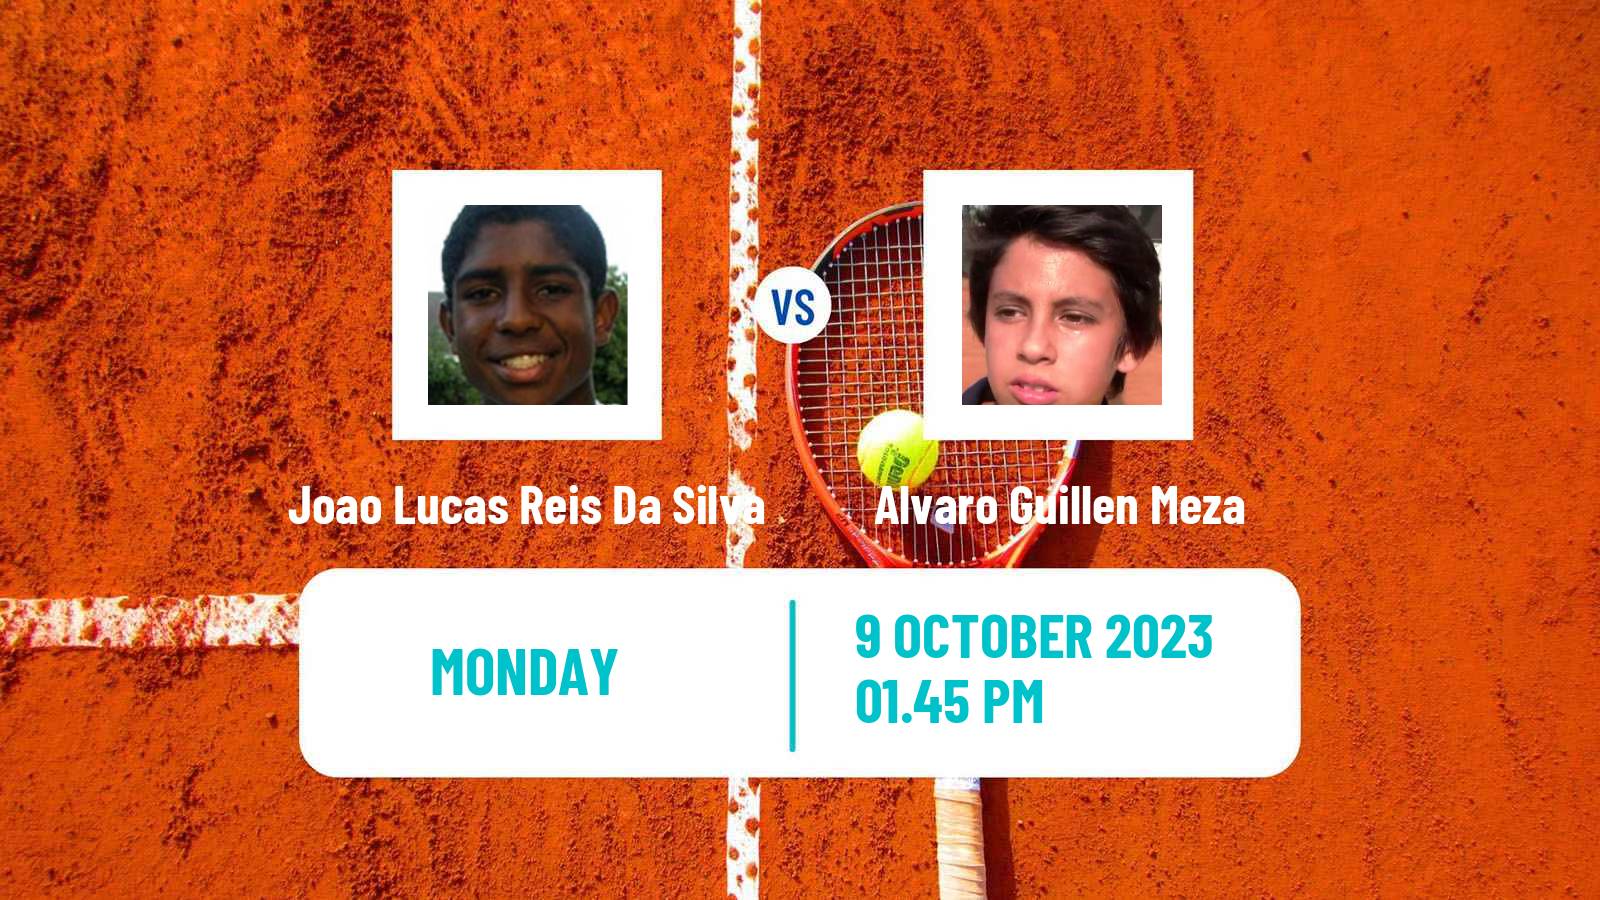 Tennis Buenos Aires 2 Challenger Men Joao Lucas Reis Da Silva - Alvaro Guillen Meza